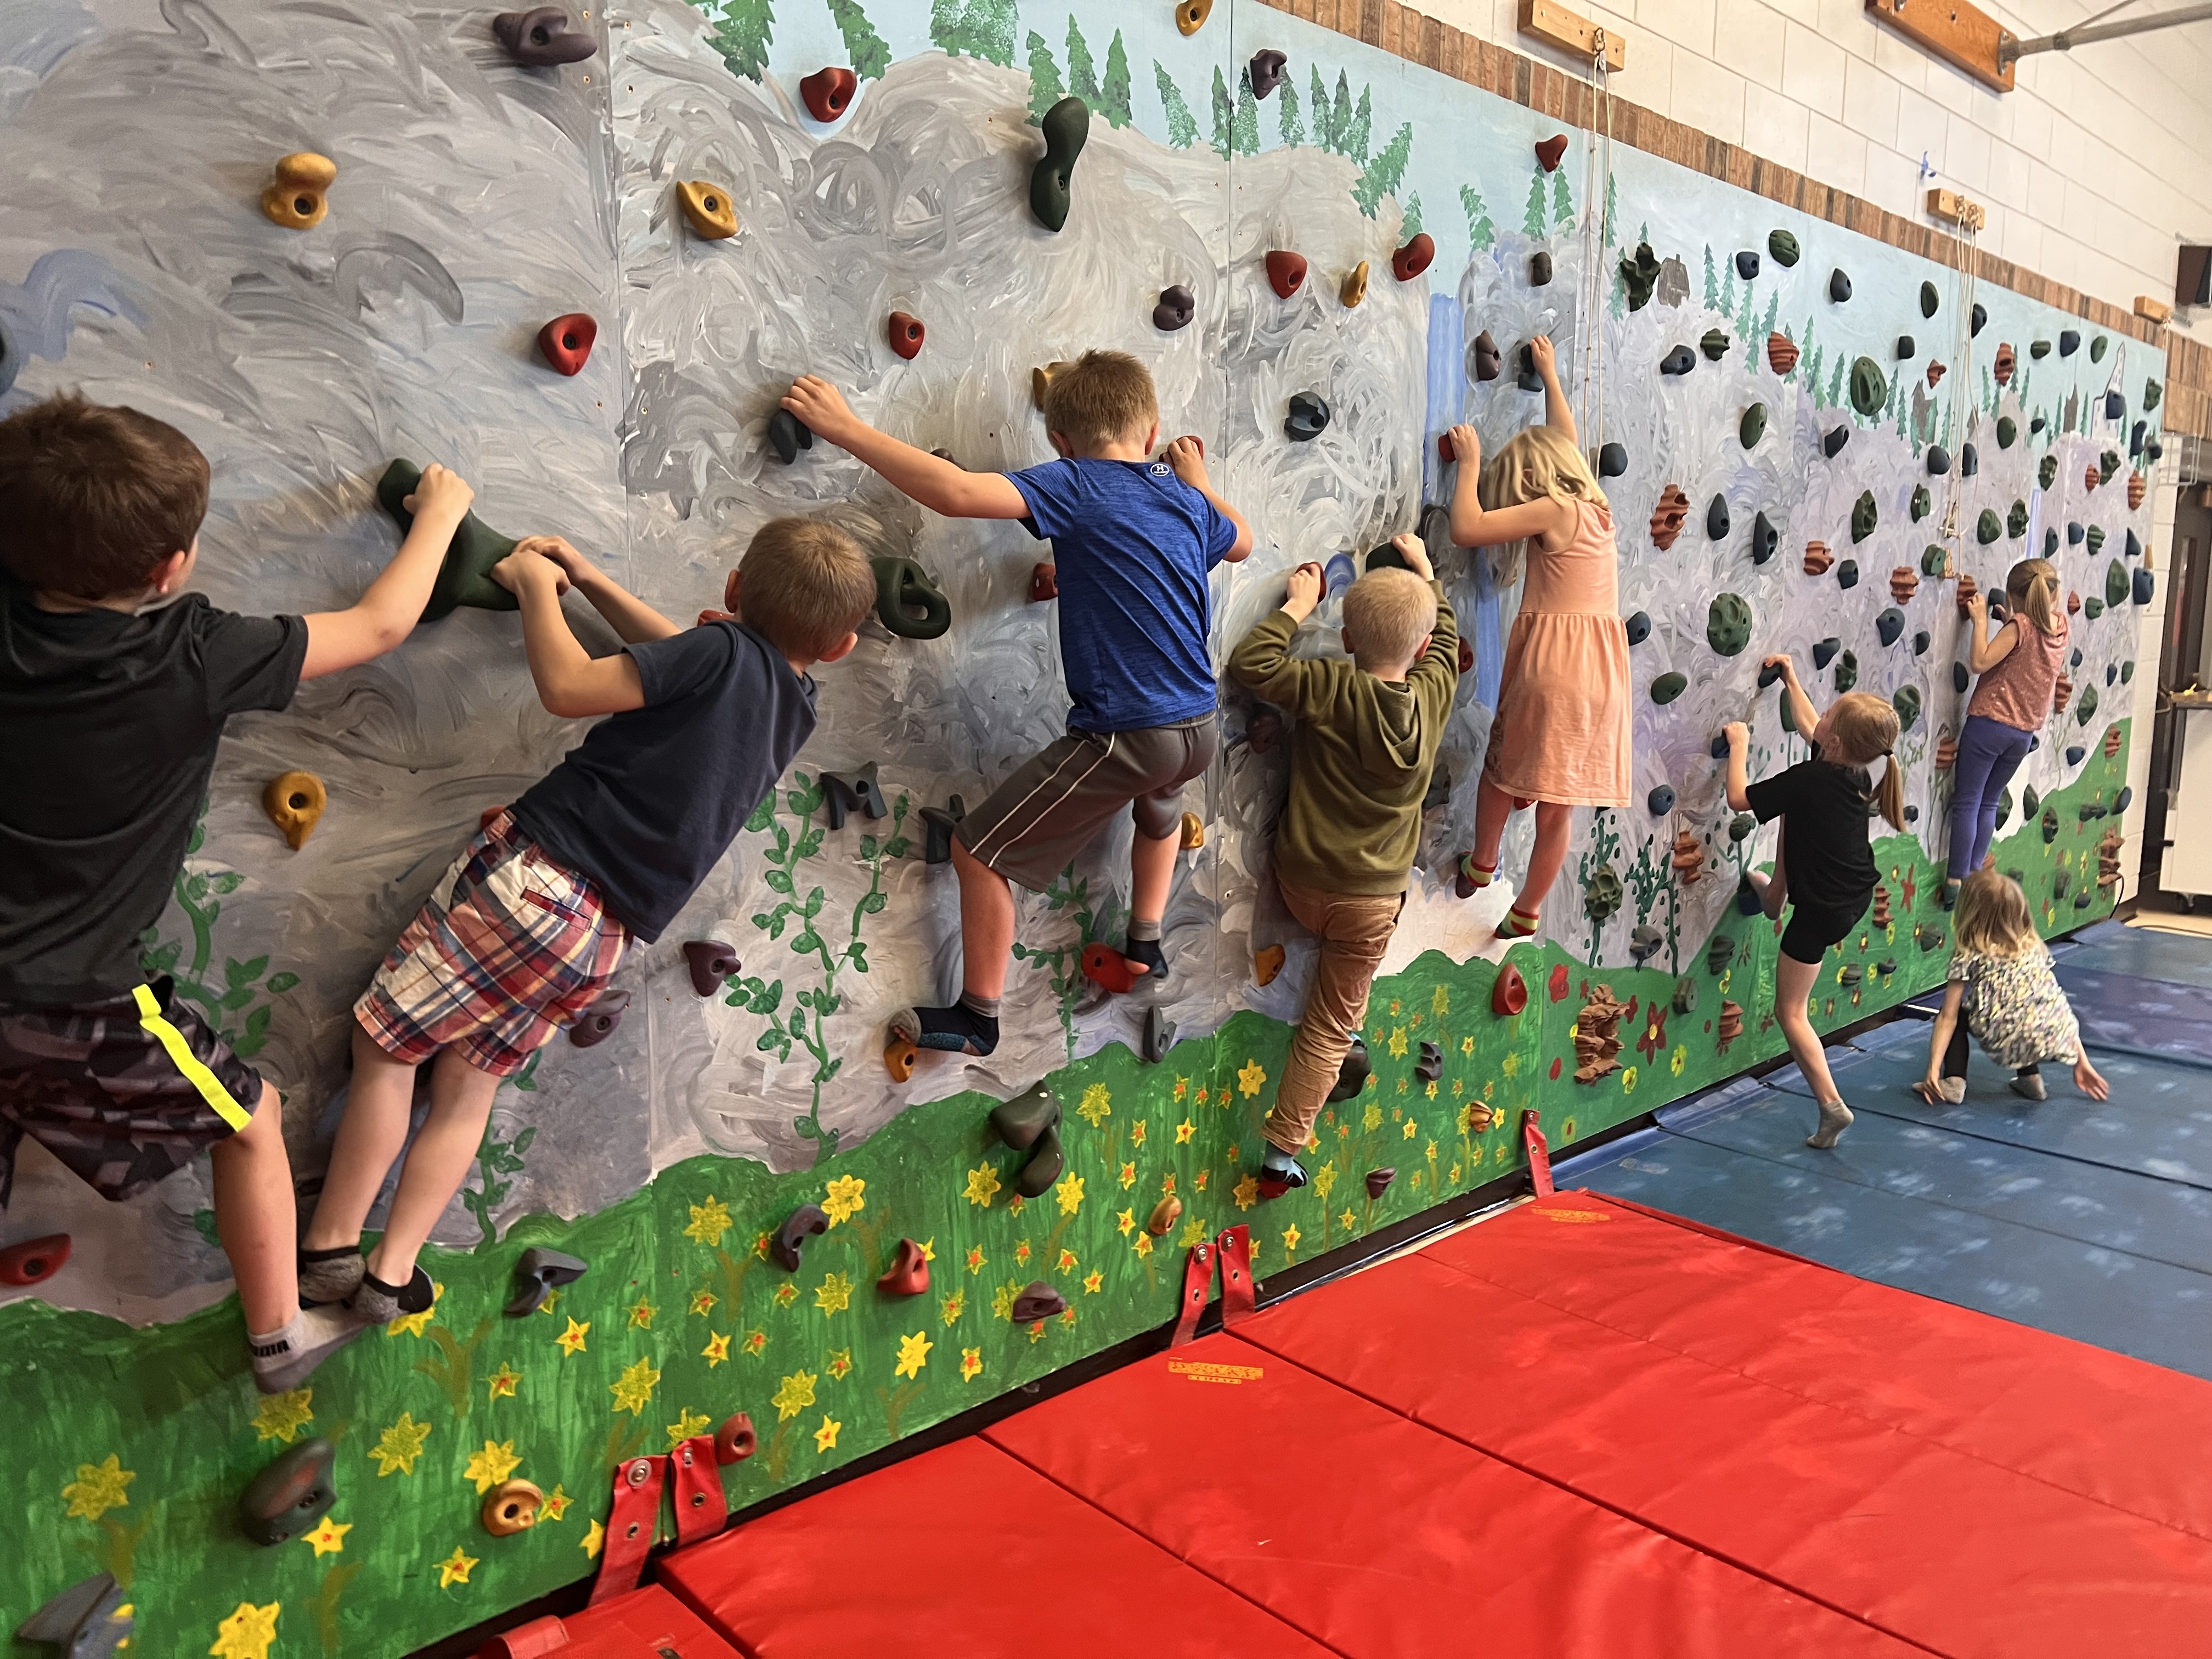 Children climbing on a bouldering wall.